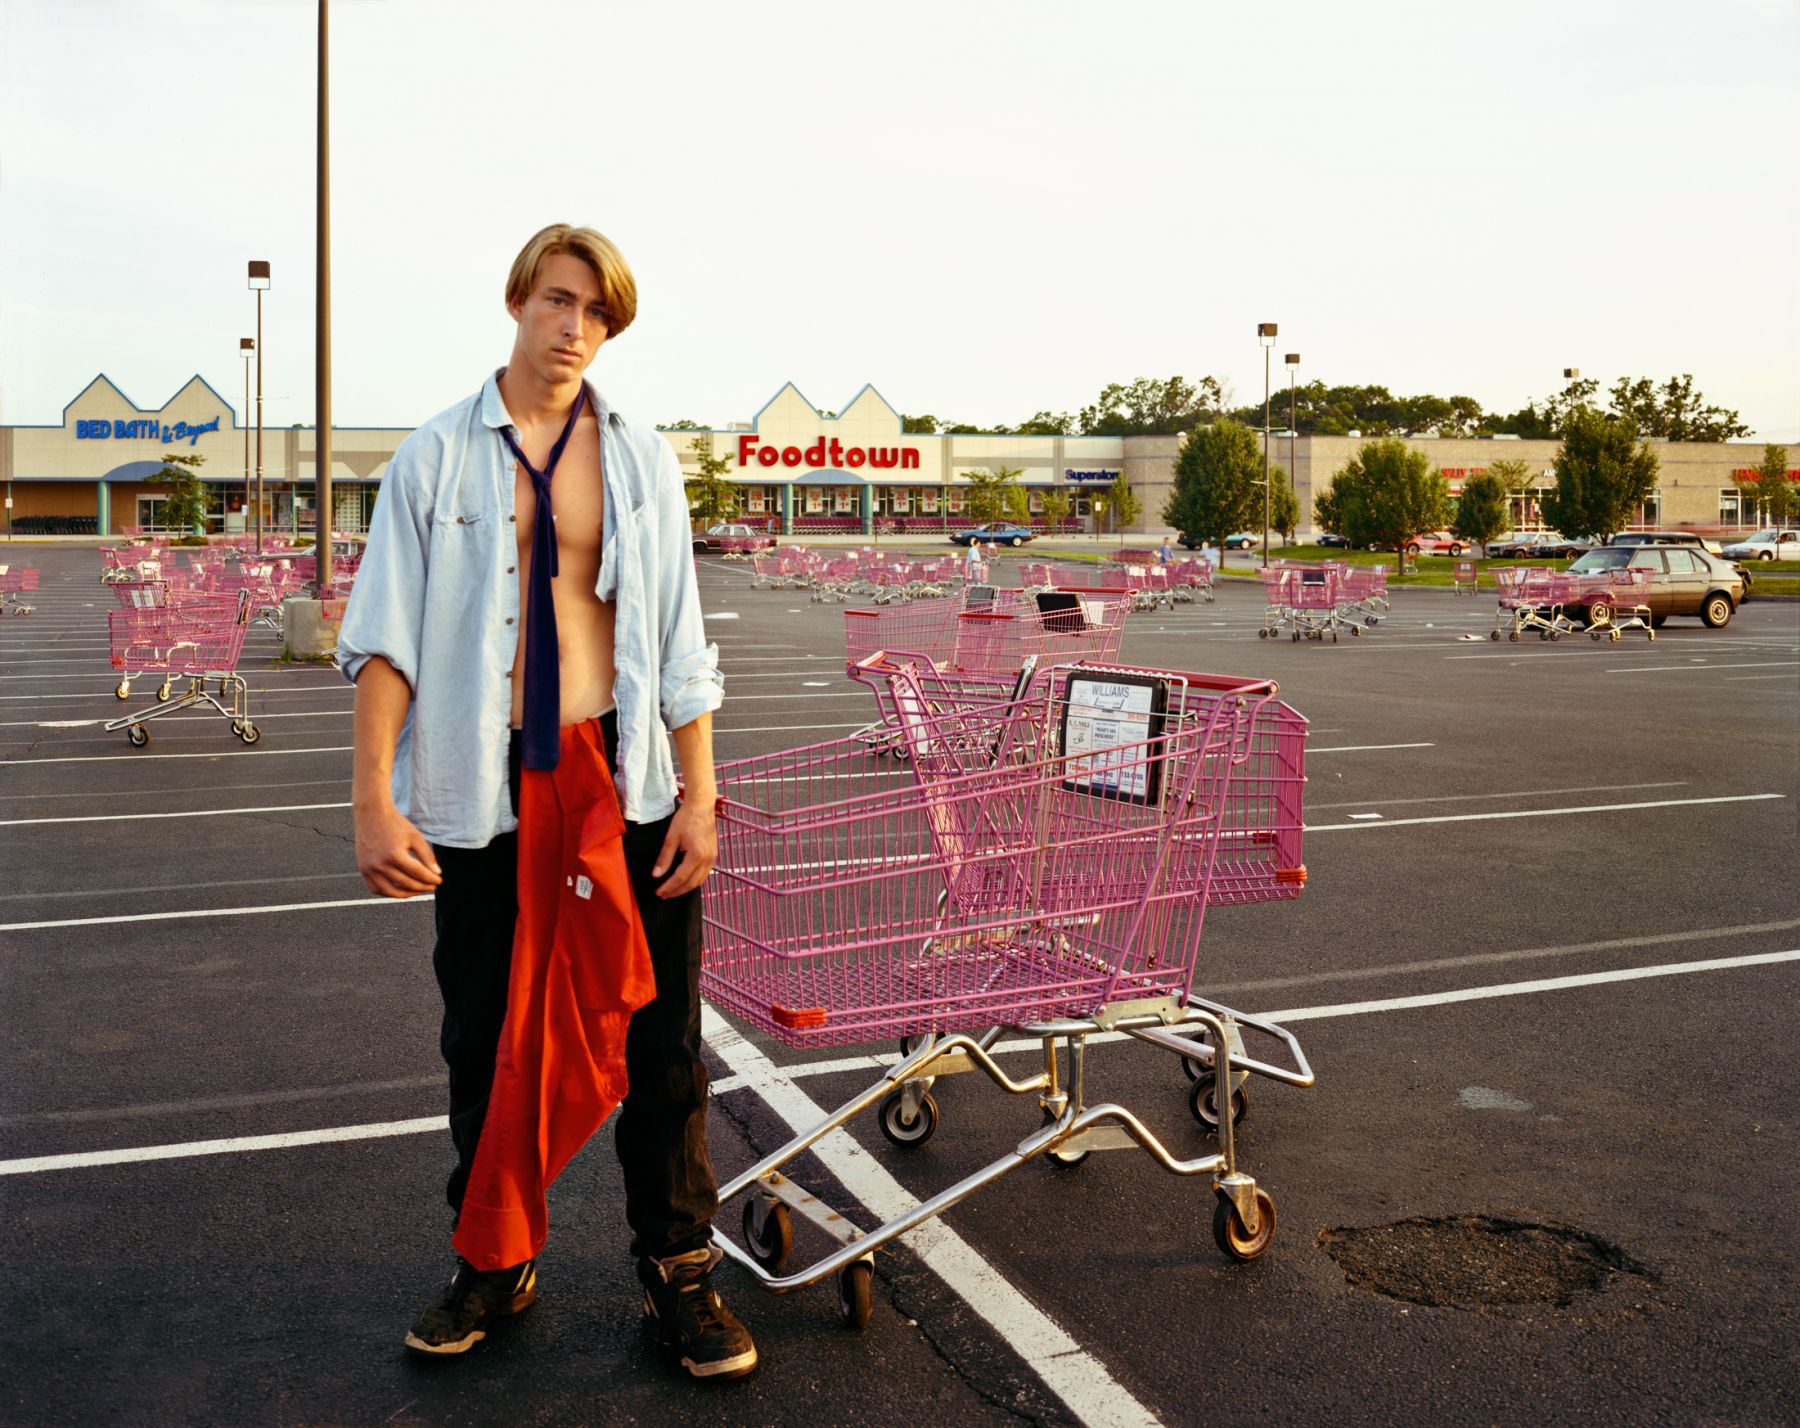 10_A Young Man Gathering Shopping Carts, Huntington, NY, July 1992.jpeg